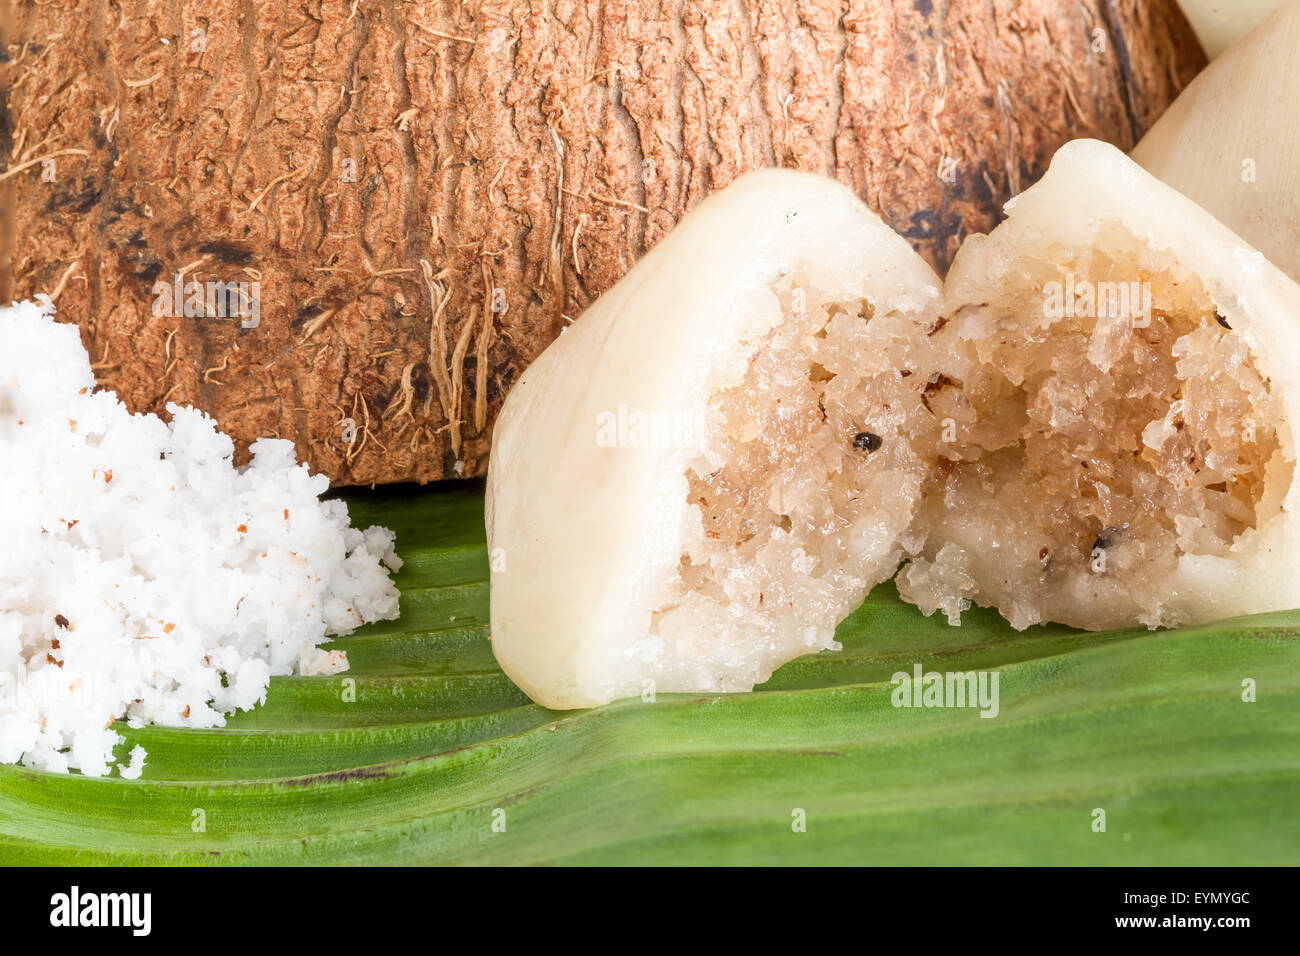 Dessert thaïlandais à base de noix de coco et à la vapeur dans une feuille de bananier Banque D'Images